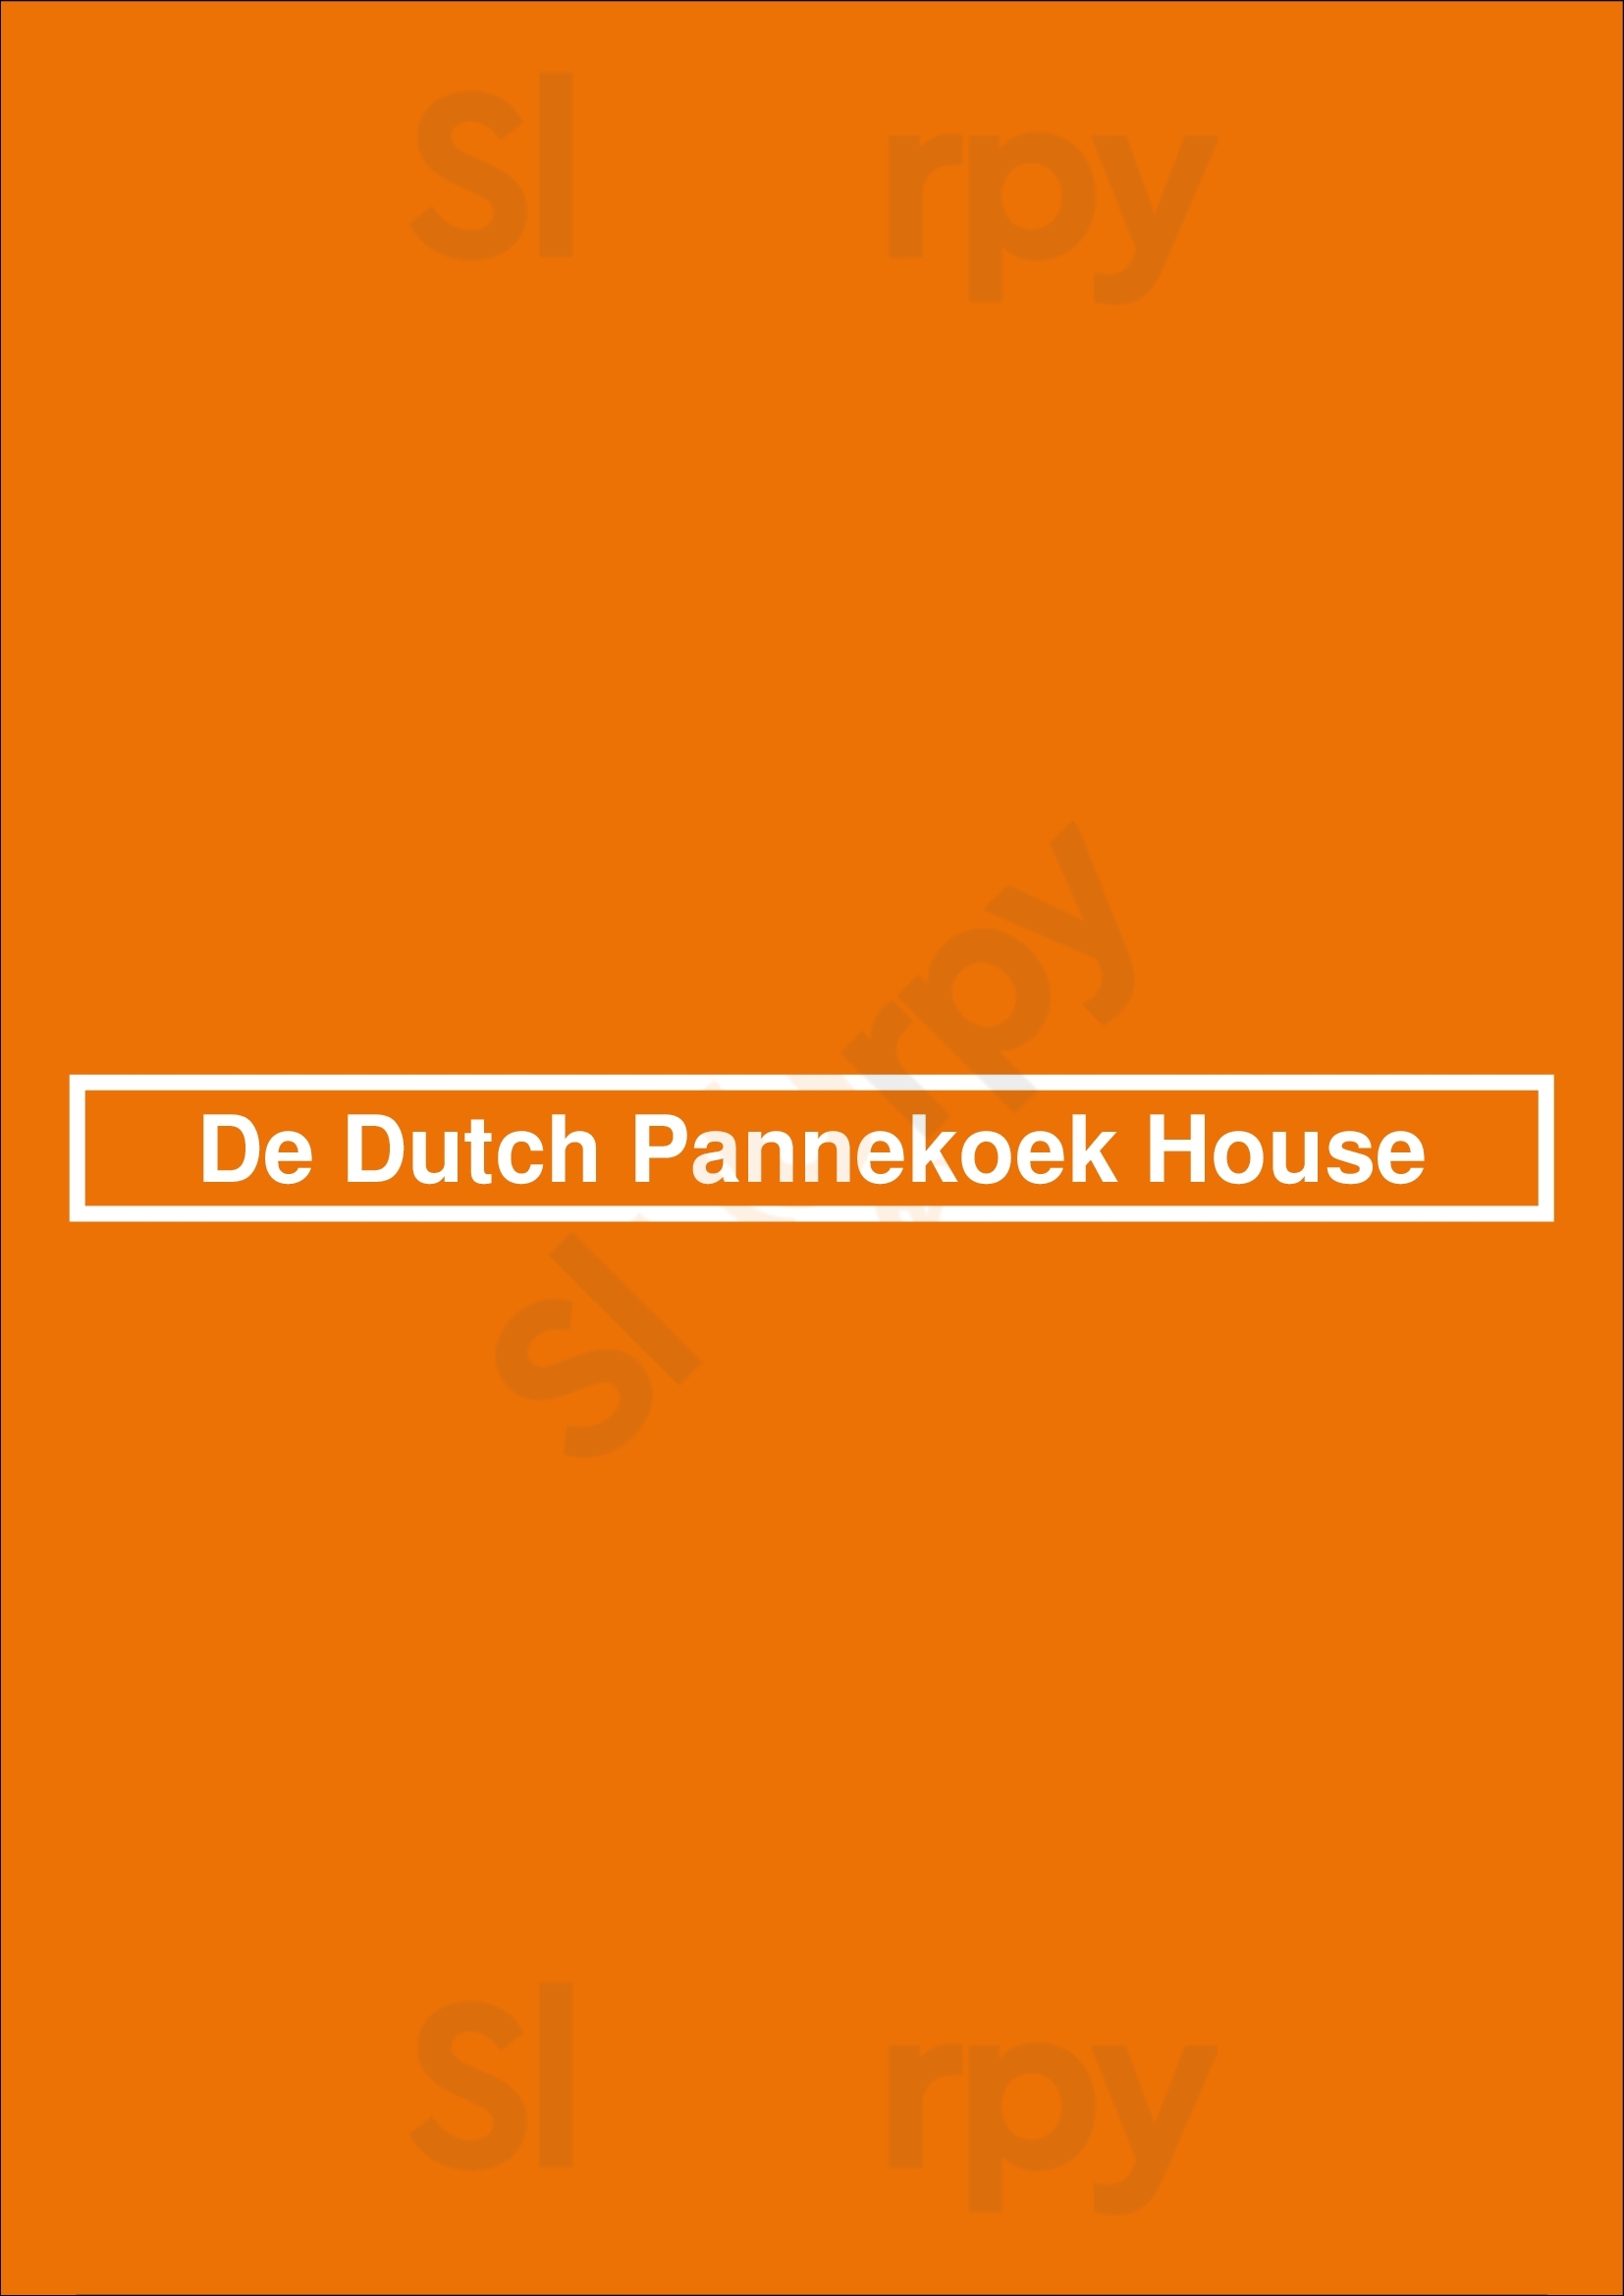 De Dutch Pannekoek House Port Coquitlam Menu - 1